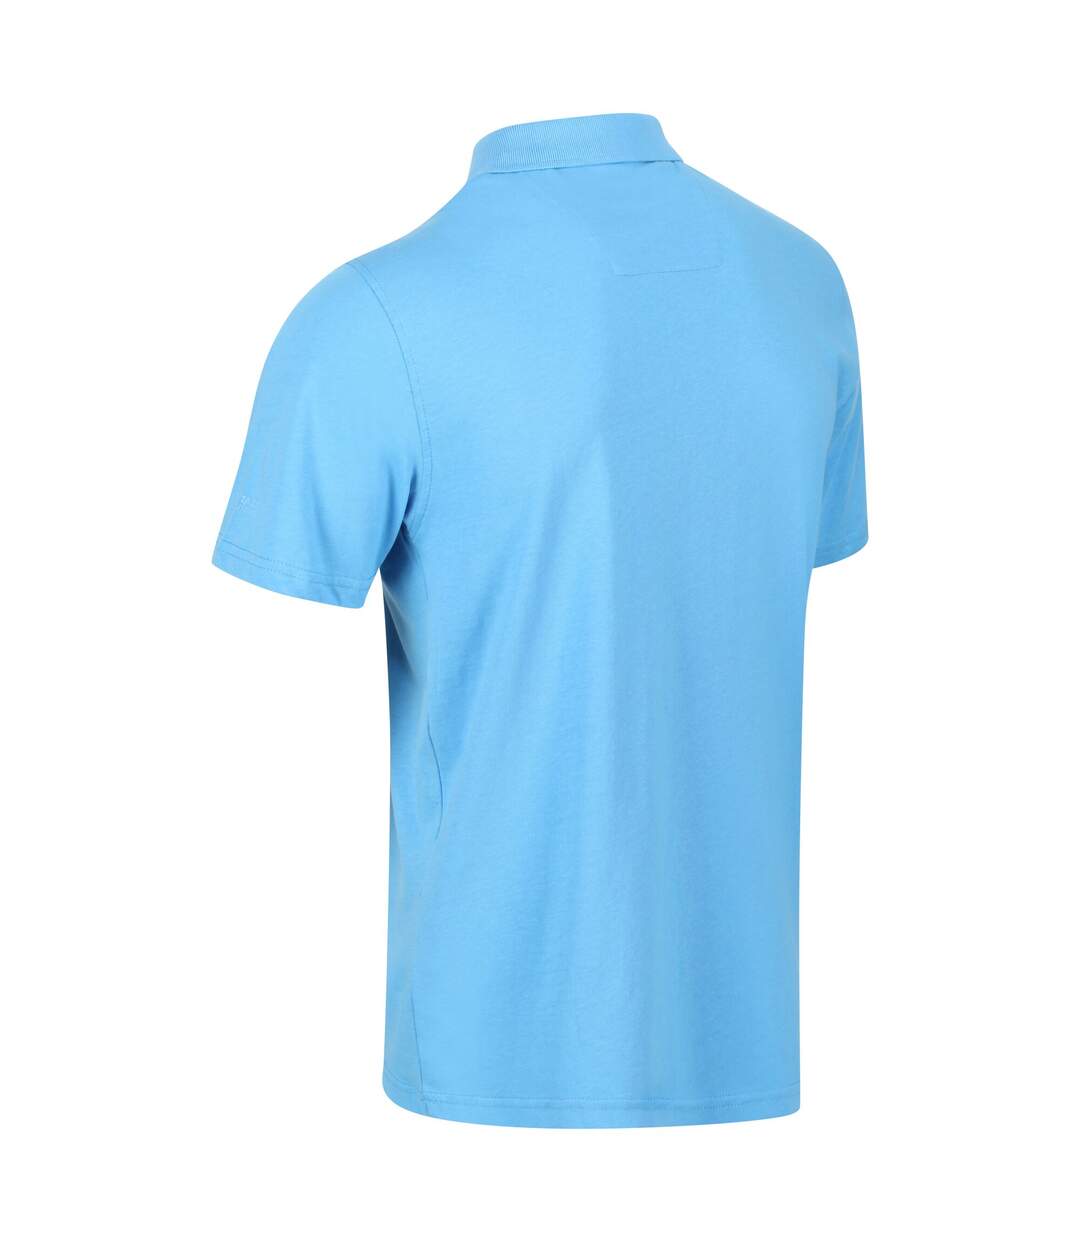 Regatta Mens Sinton Lightweight Polo Shirt (Sky Blue)